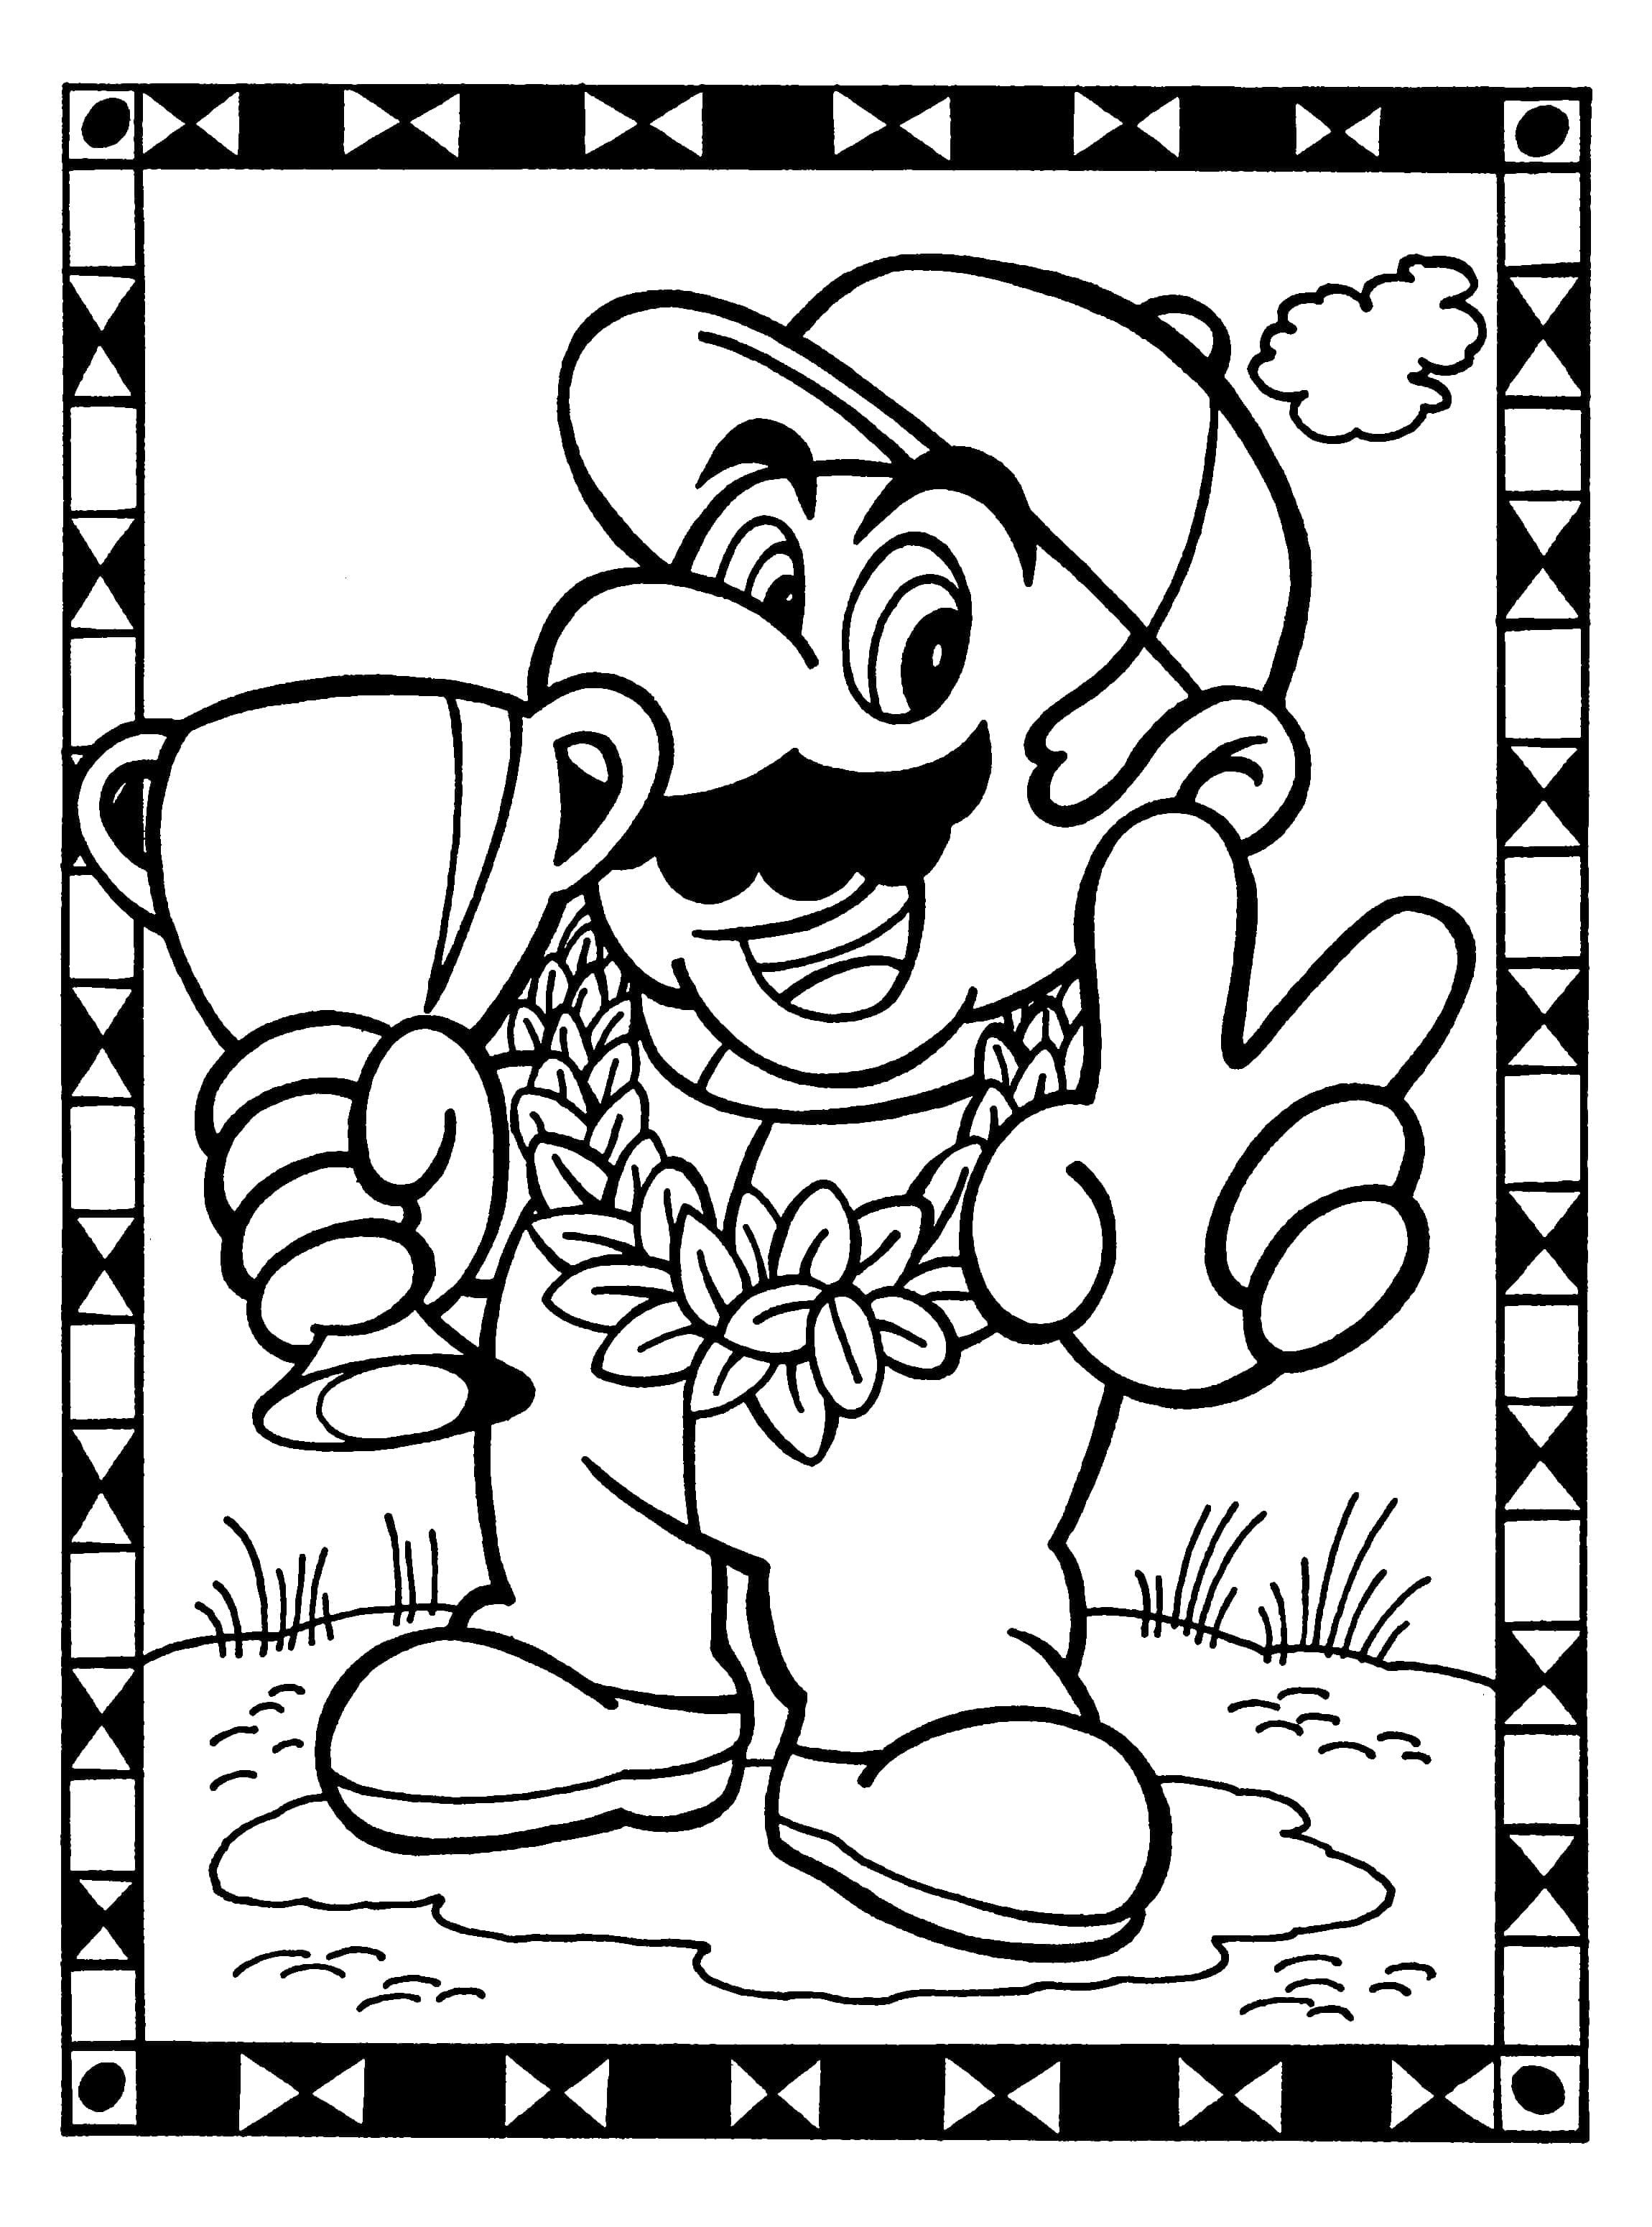 Dibujo 11 de Super Mario para imprimir y colorear